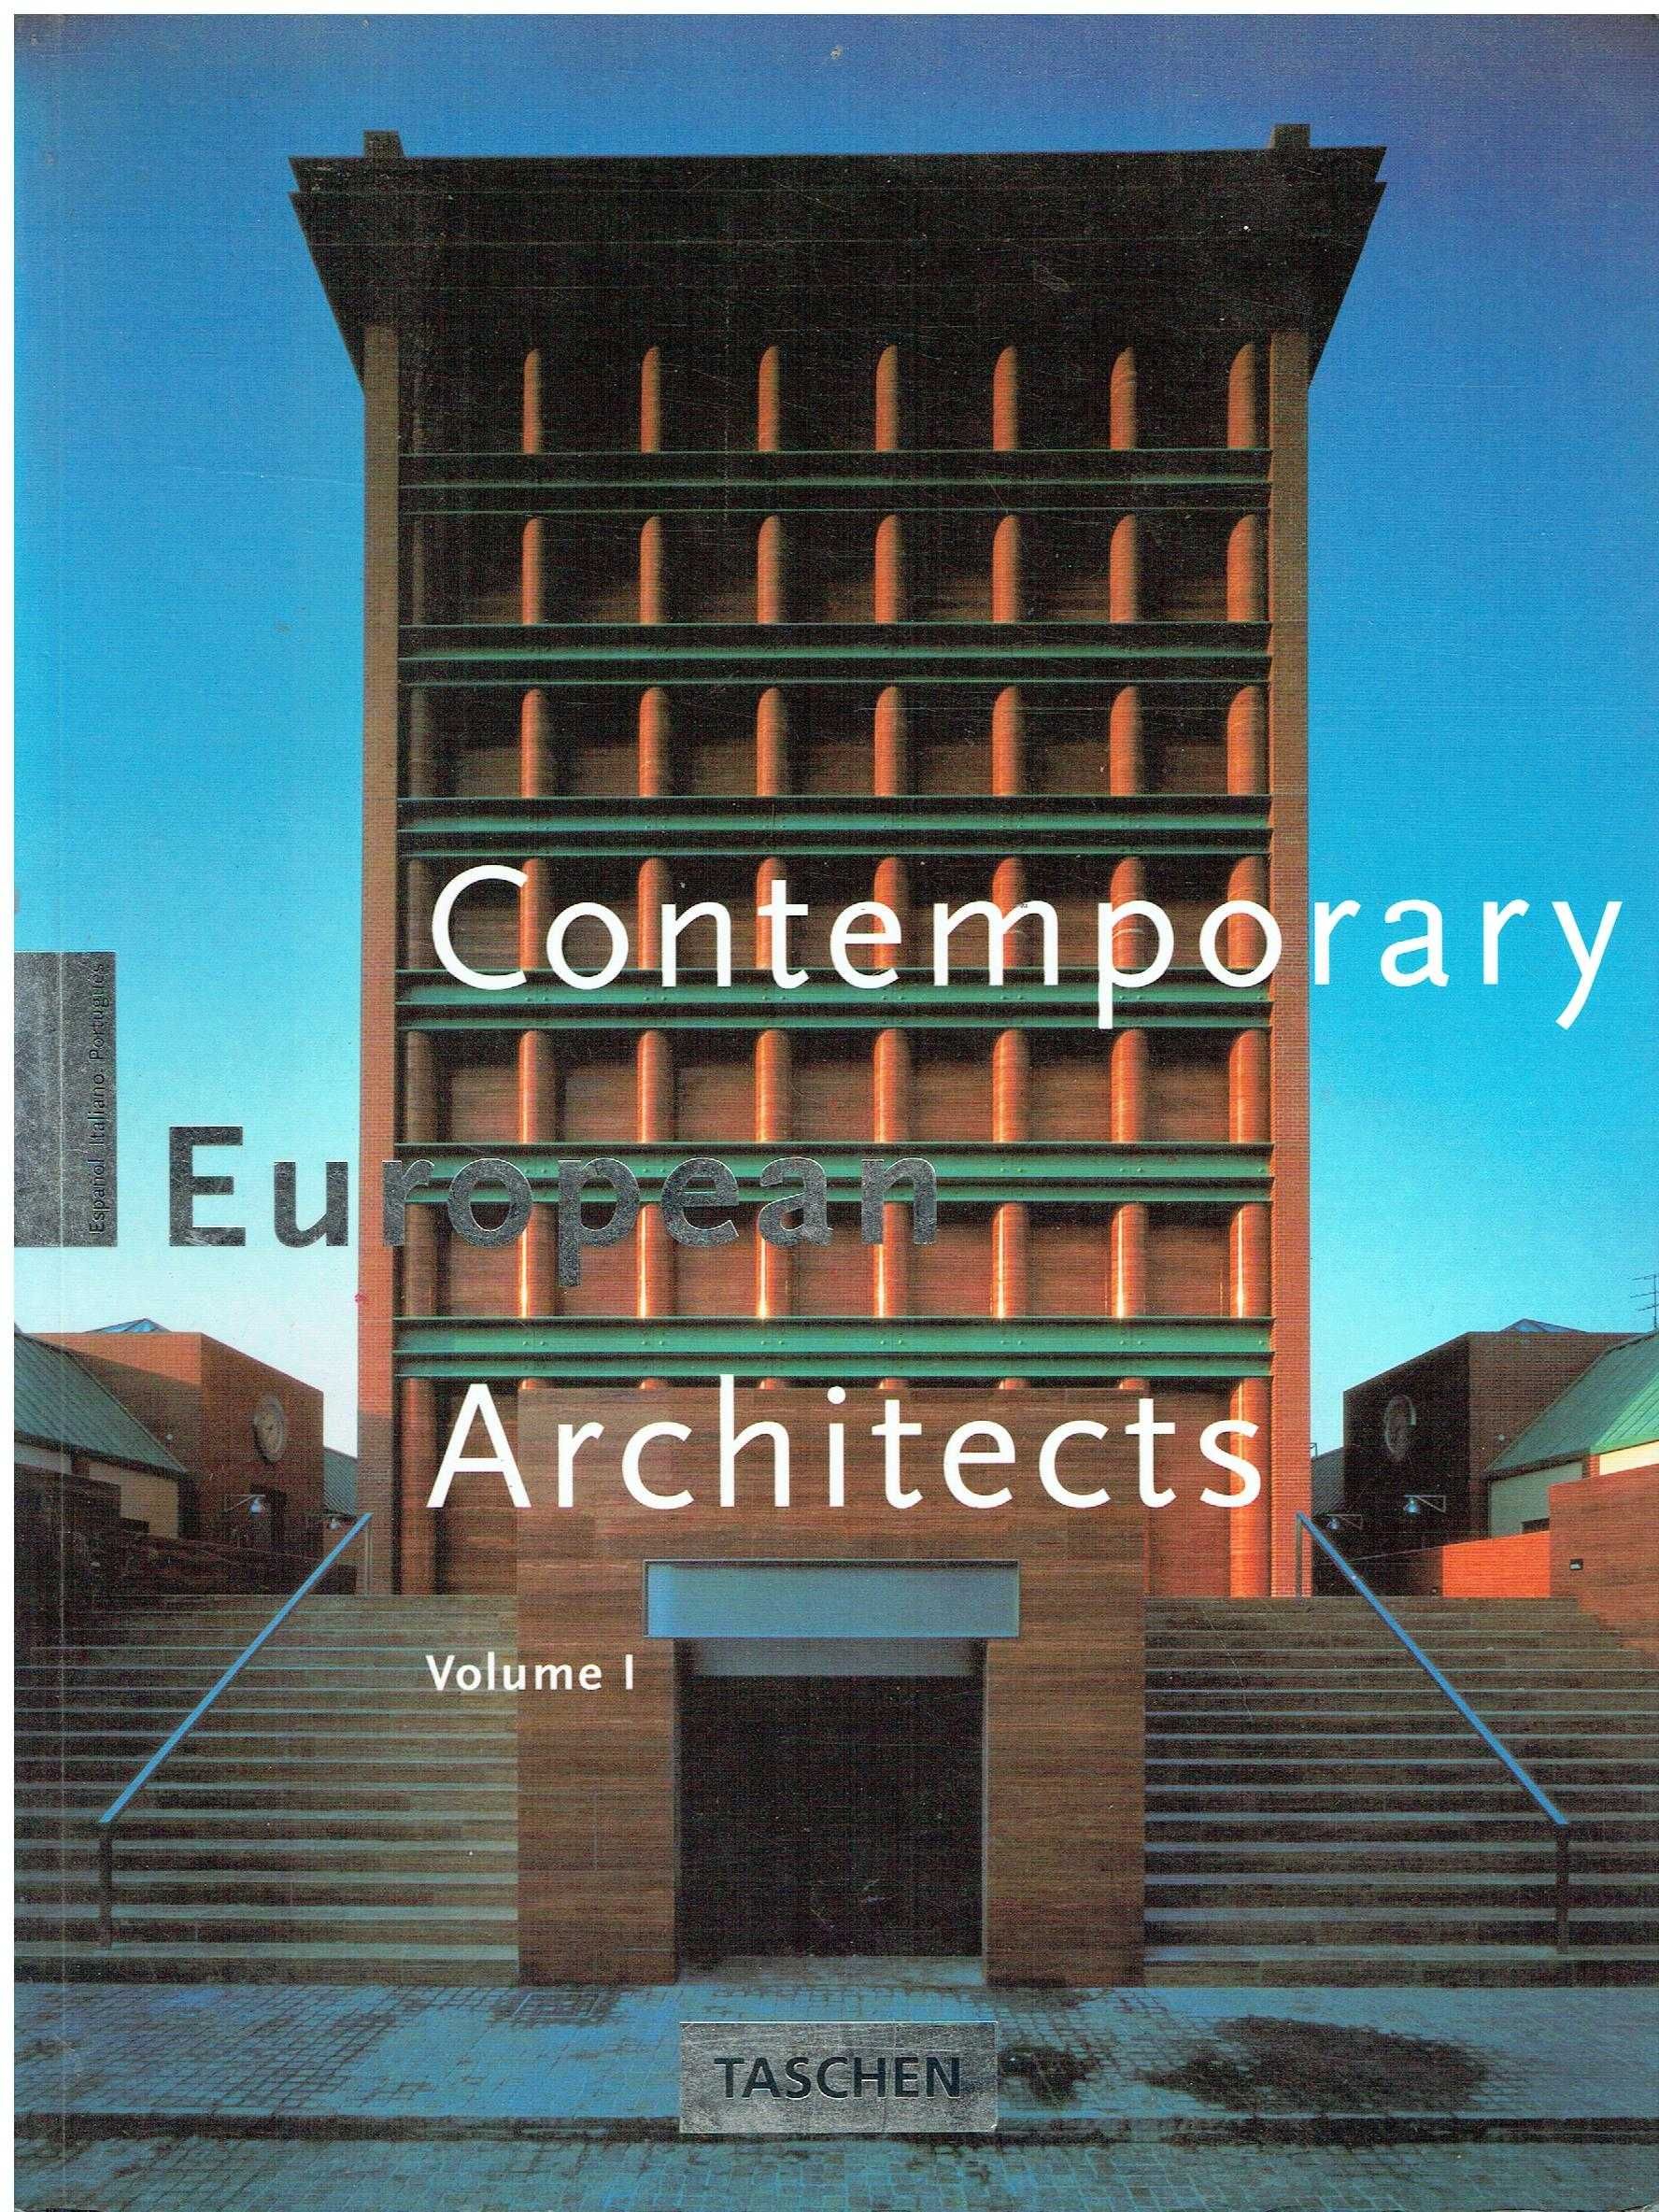 6721

Contemporary European Architects - Vol. I Taschen